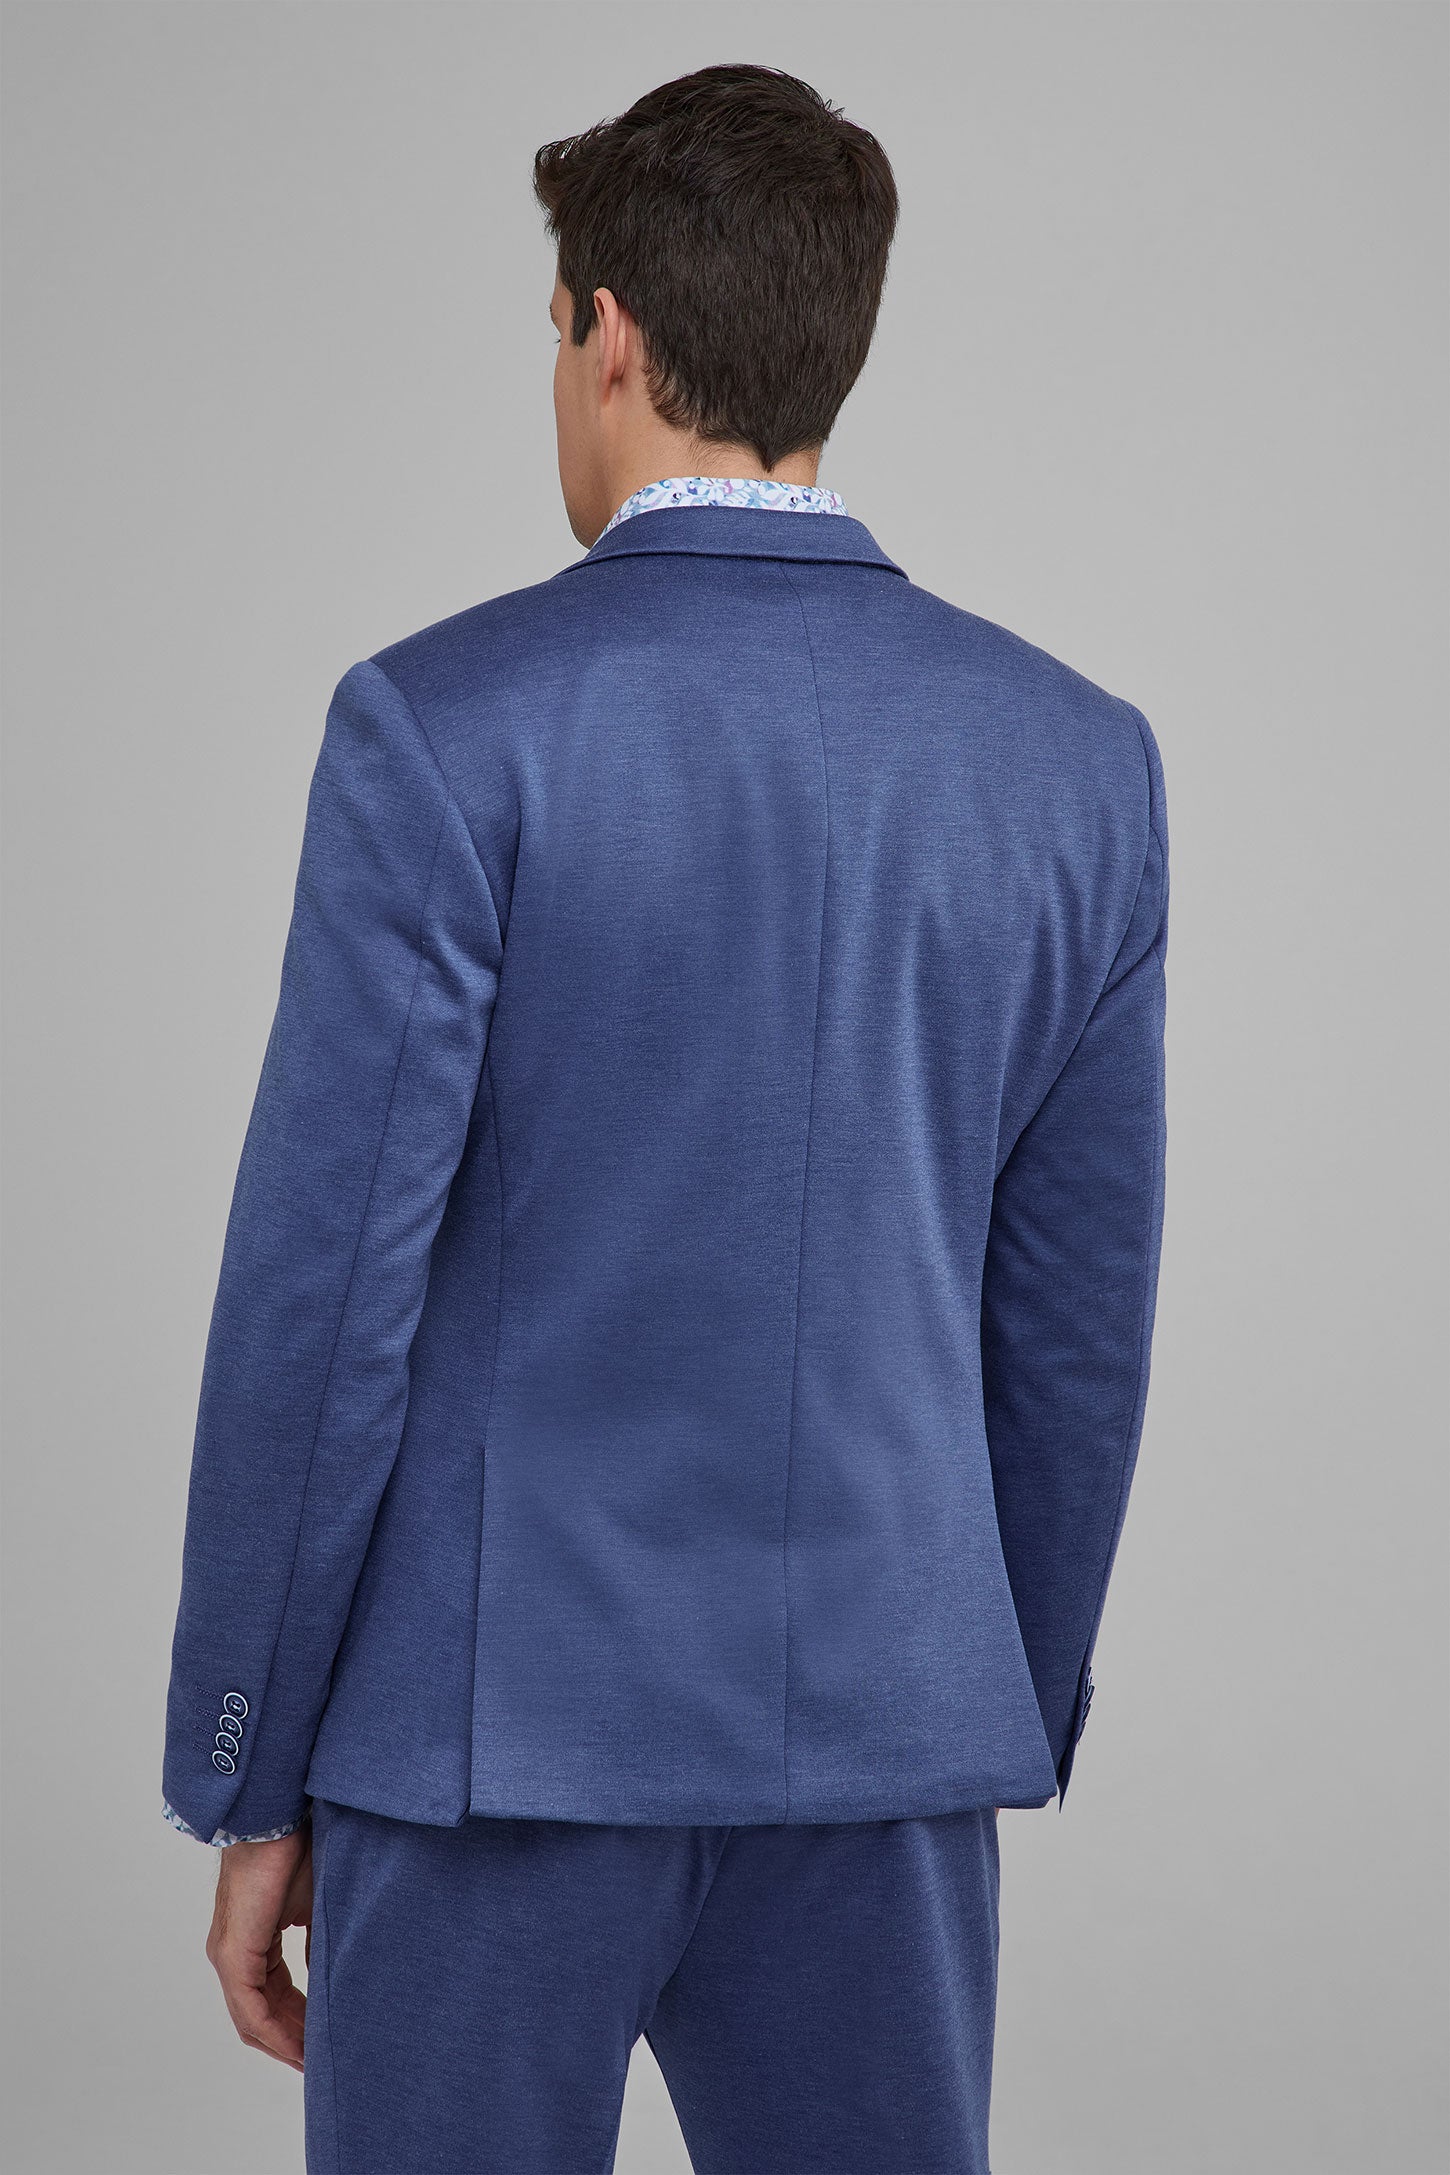 Veston coupe semi-ajustée tricot - Homme && BLEU